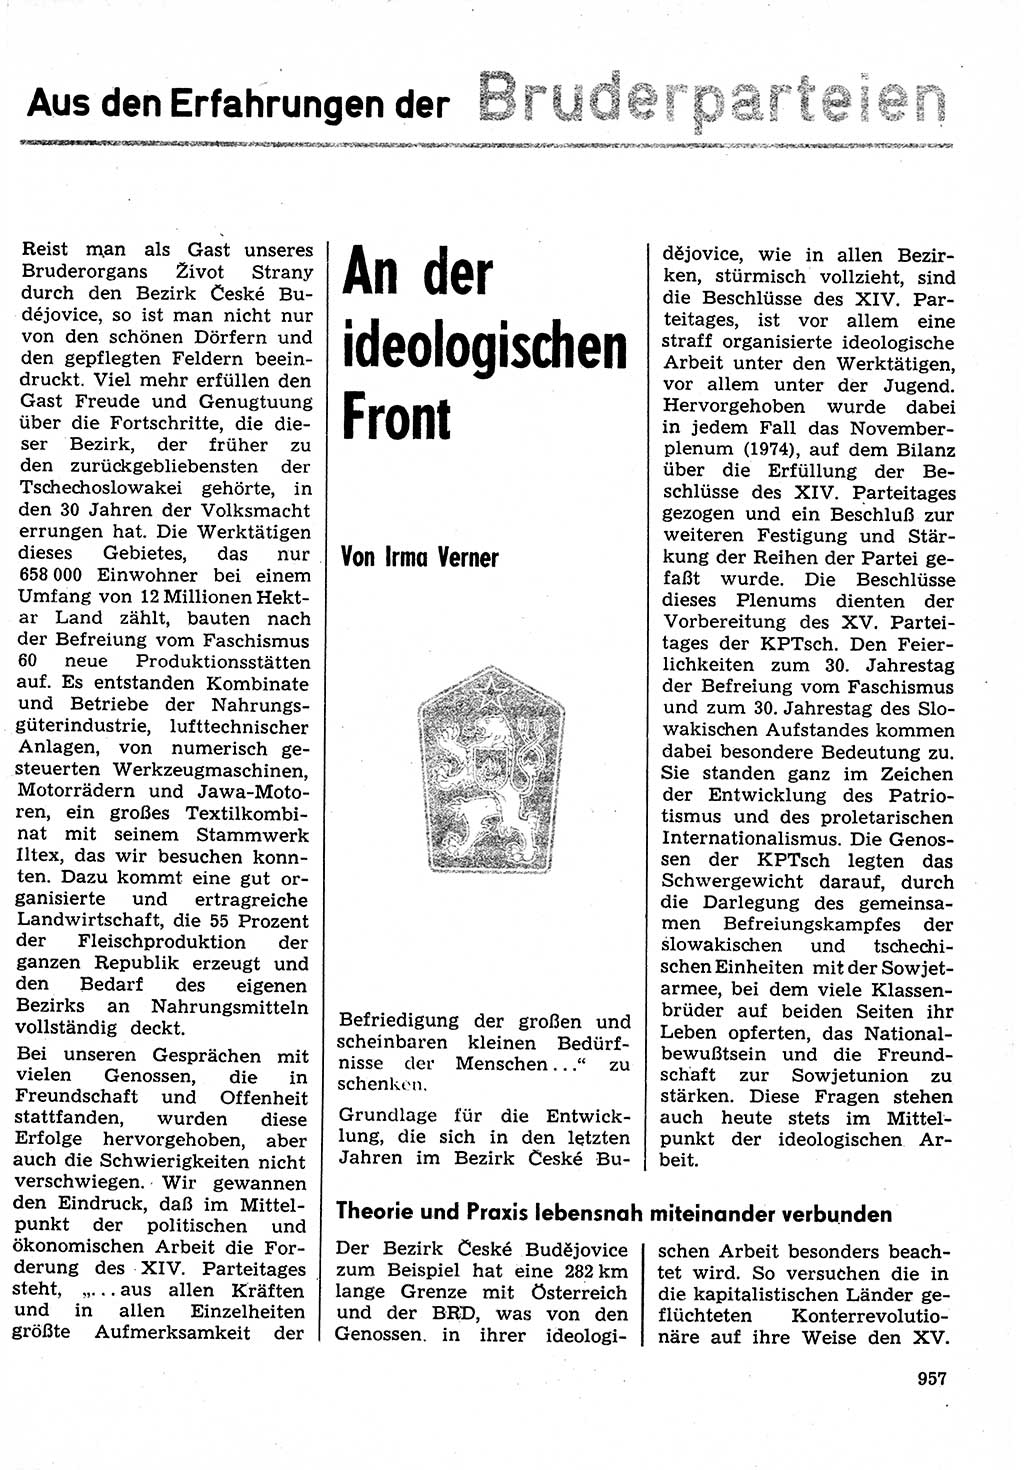 Neuer Weg (NW), Organ des Zentralkomitees (ZK) der SED (Sozialistische Einheitspartei Deutschlands) für Fragen des Parteilebens, 30. Jahrgang [Deutsche Demokratische Republik (DDR)] 1975, Seite 957 (NW ZK SED DDR 1975, S. 957)